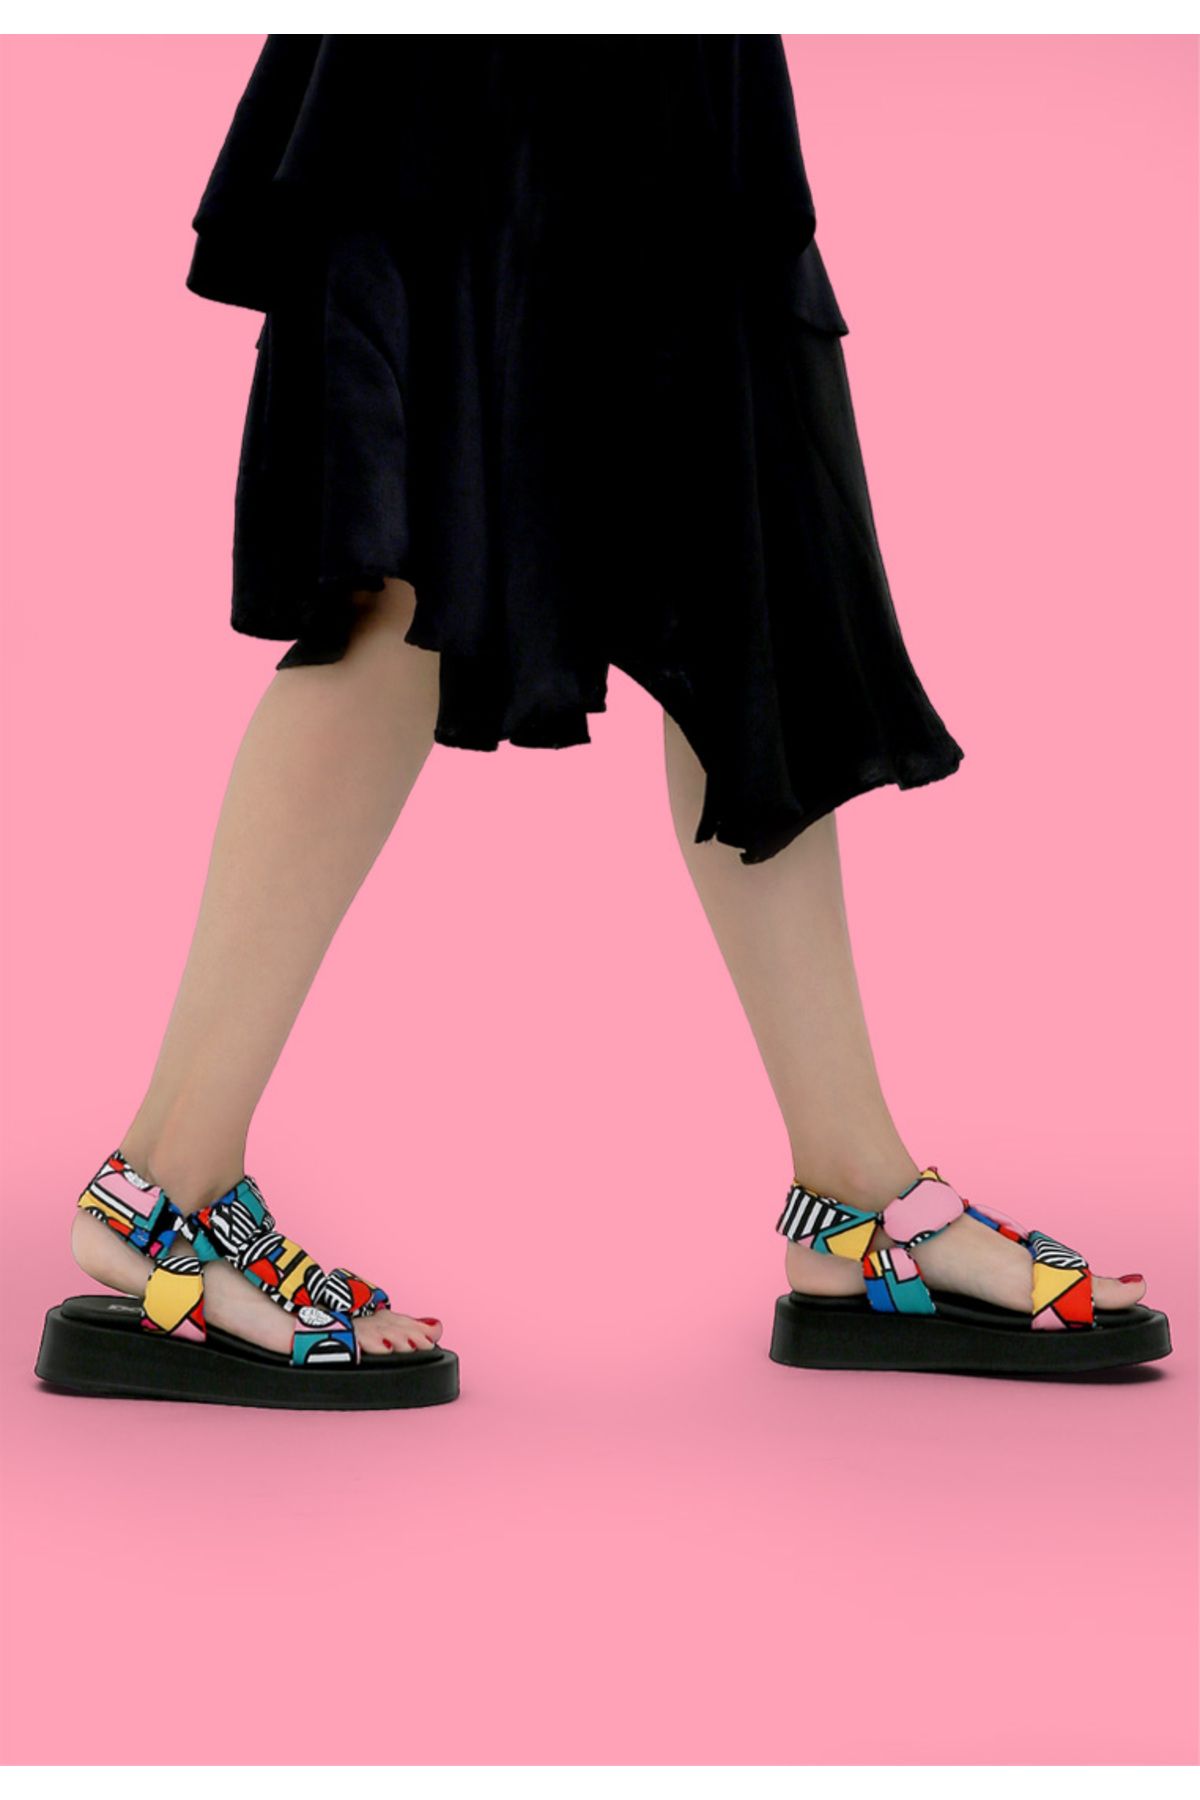 Dogo Kadın Vegan Çok Renkli Kalın Taban Sandalet - Painting In Harmony Tasarım